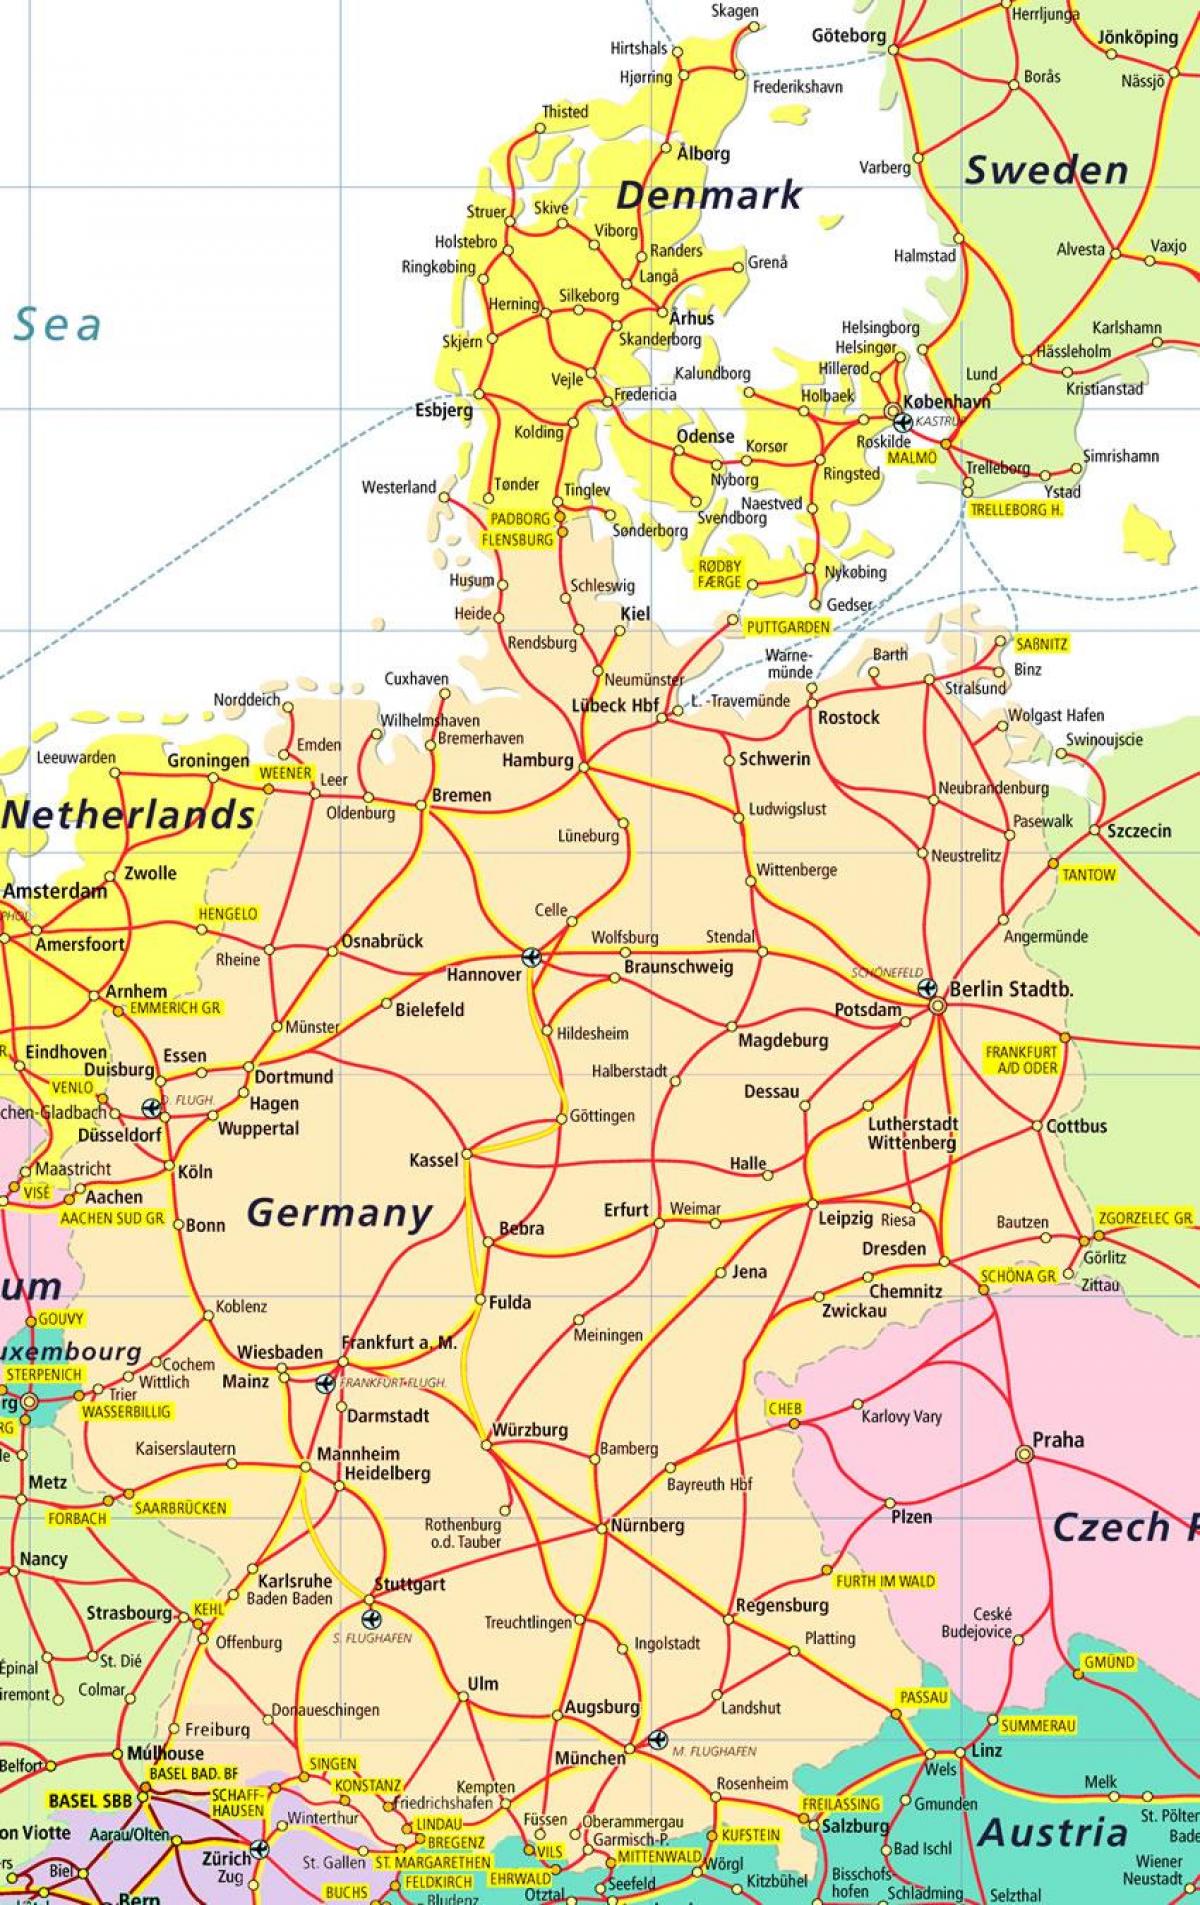 Tanskan nähtävyydet kartta - Tanska nähtävyydet kartta (Pohjois-Eurooppa -  Eurooppa)